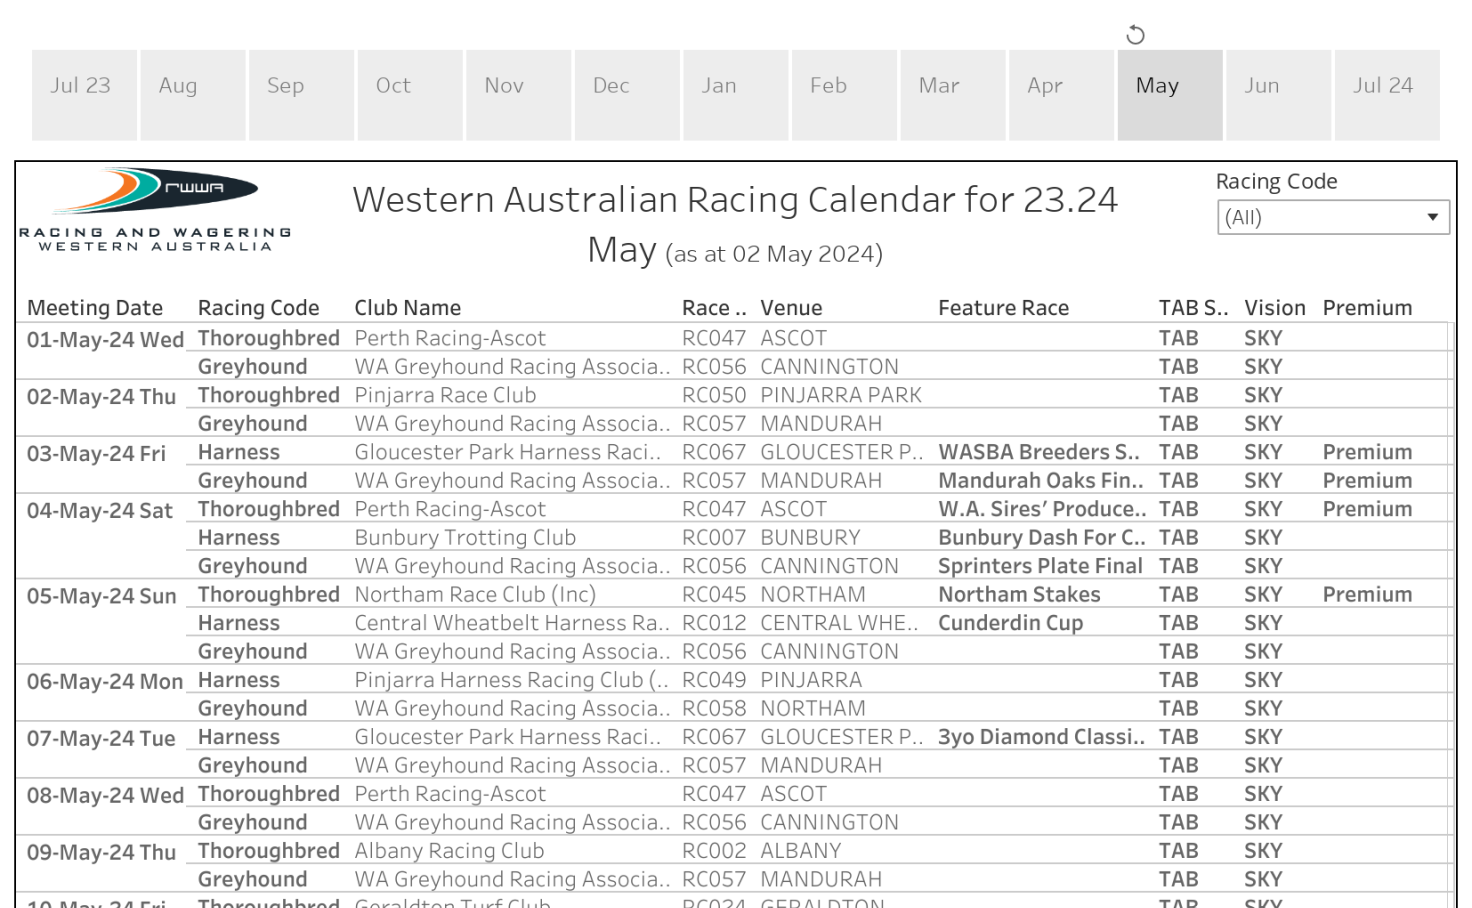 RWWA Racing Calendar Tableau Public